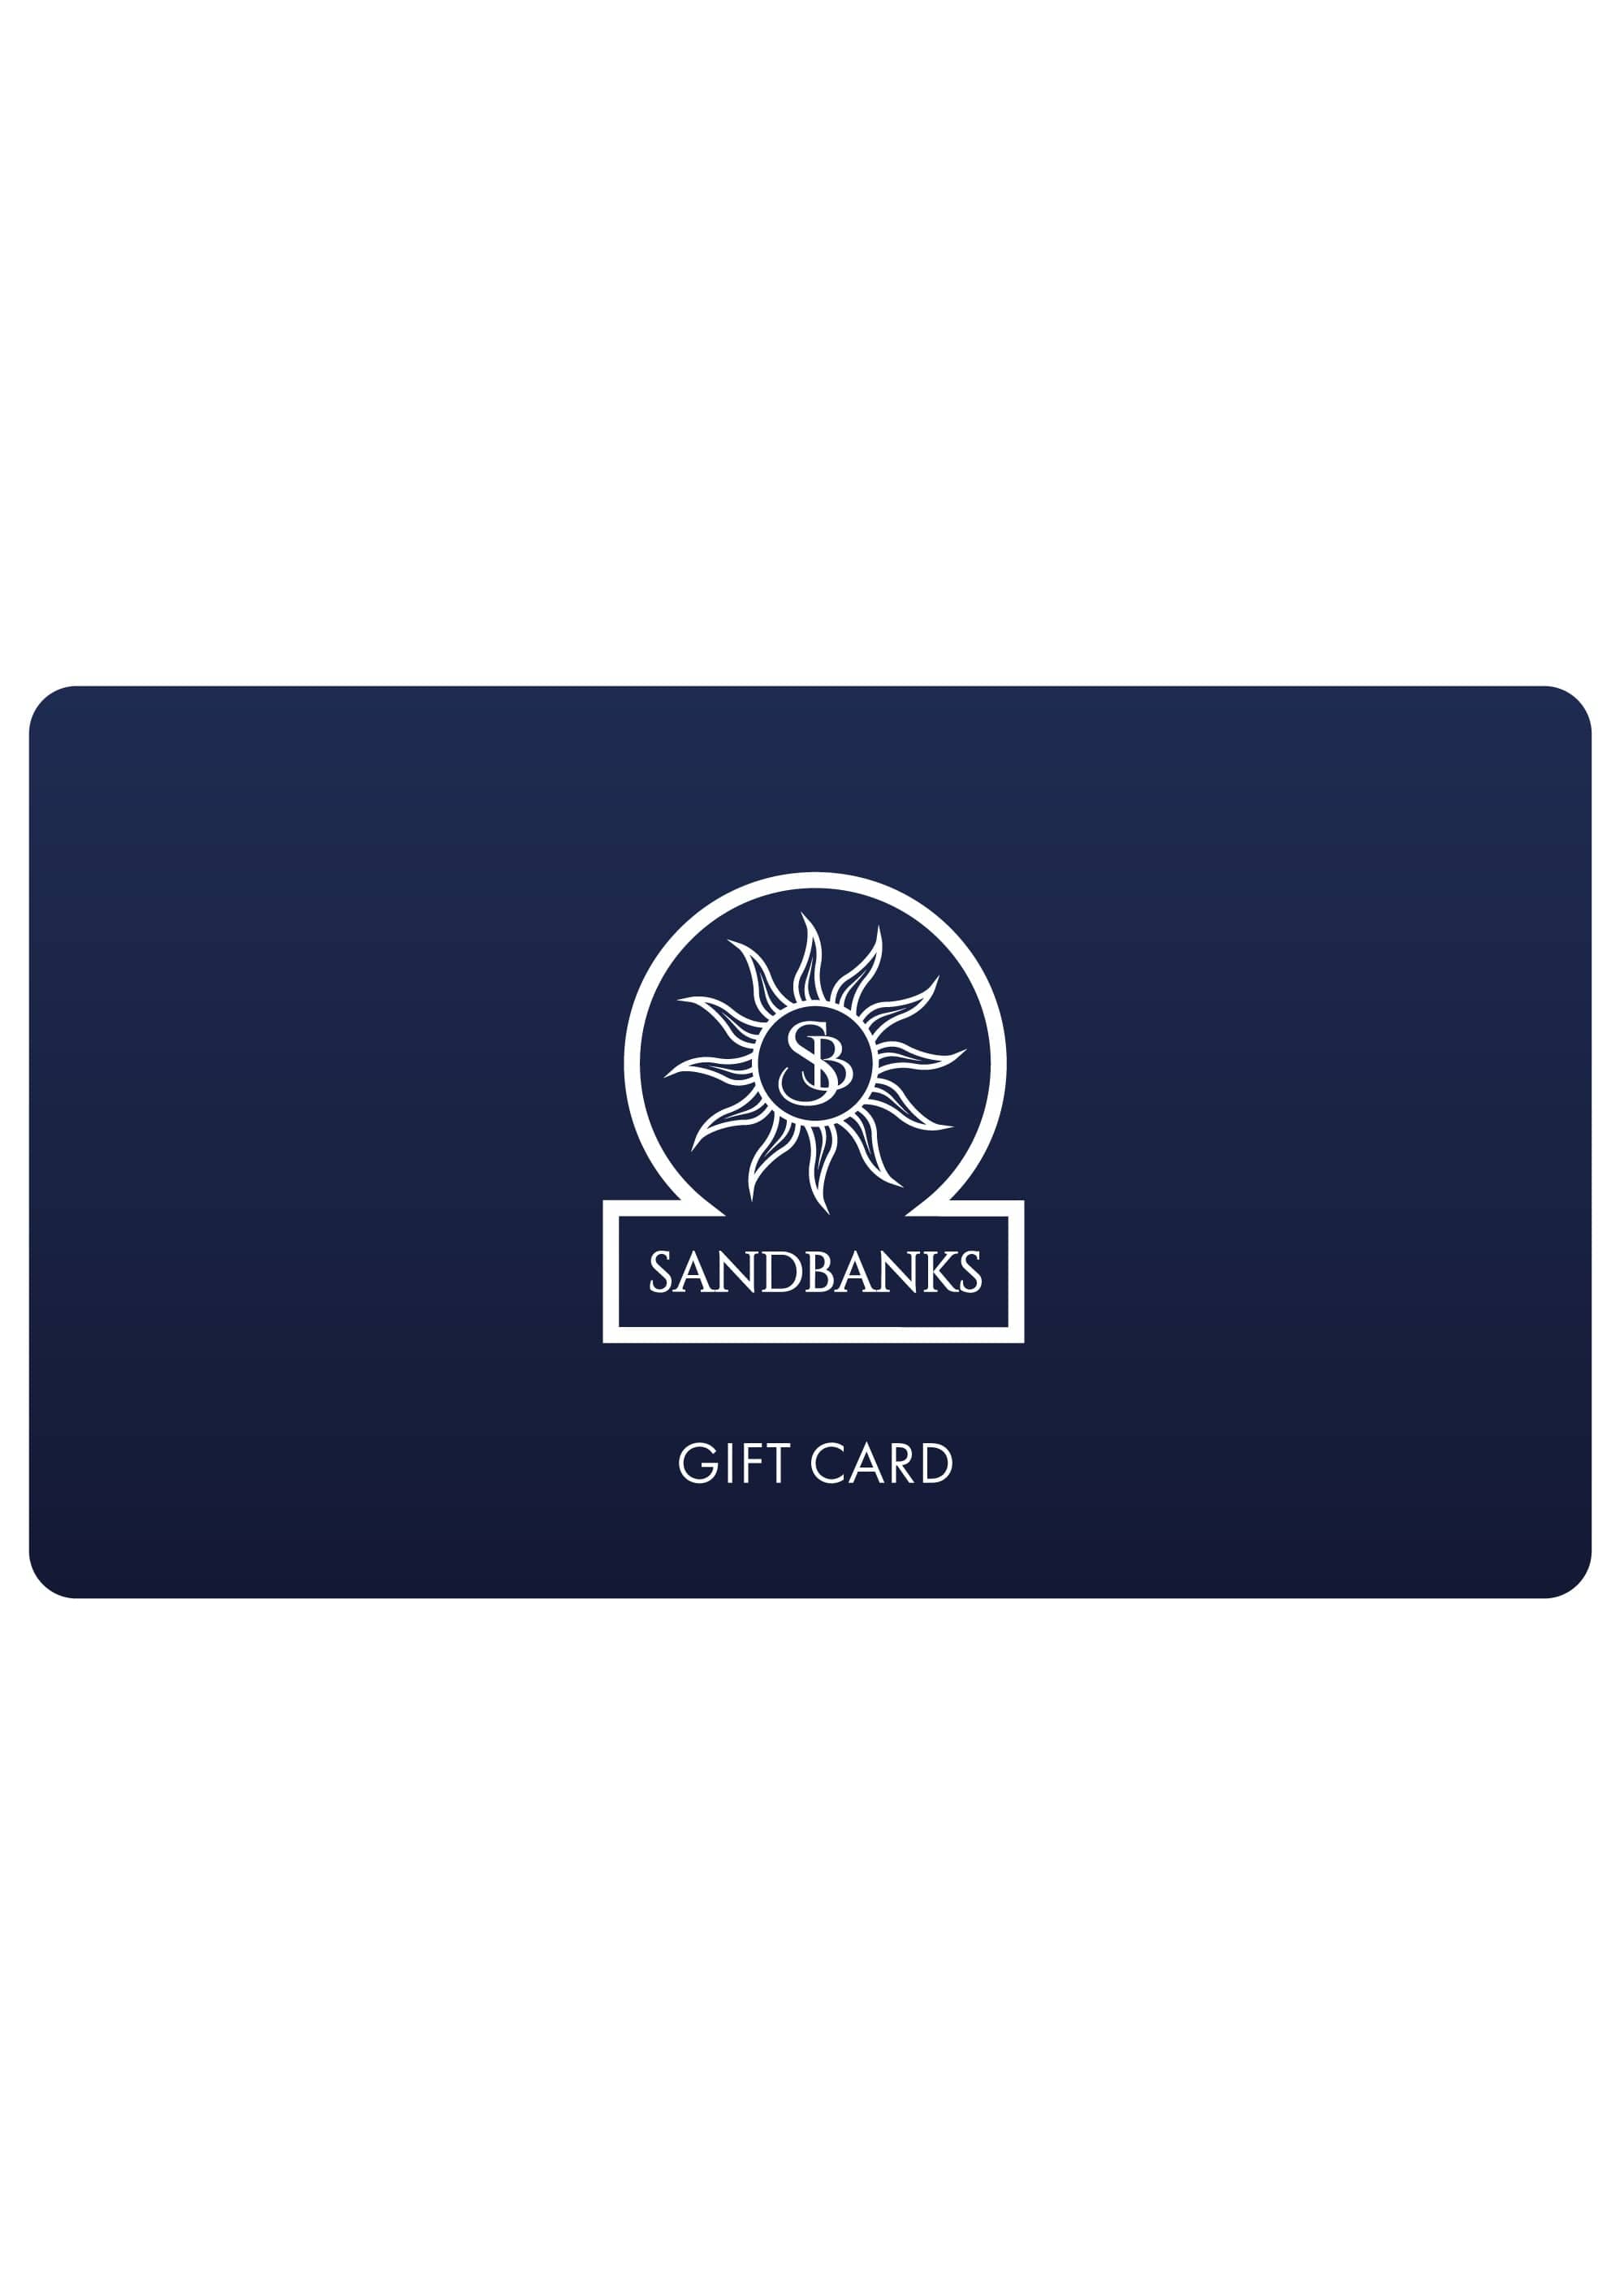 Gift Card - Sandbanks